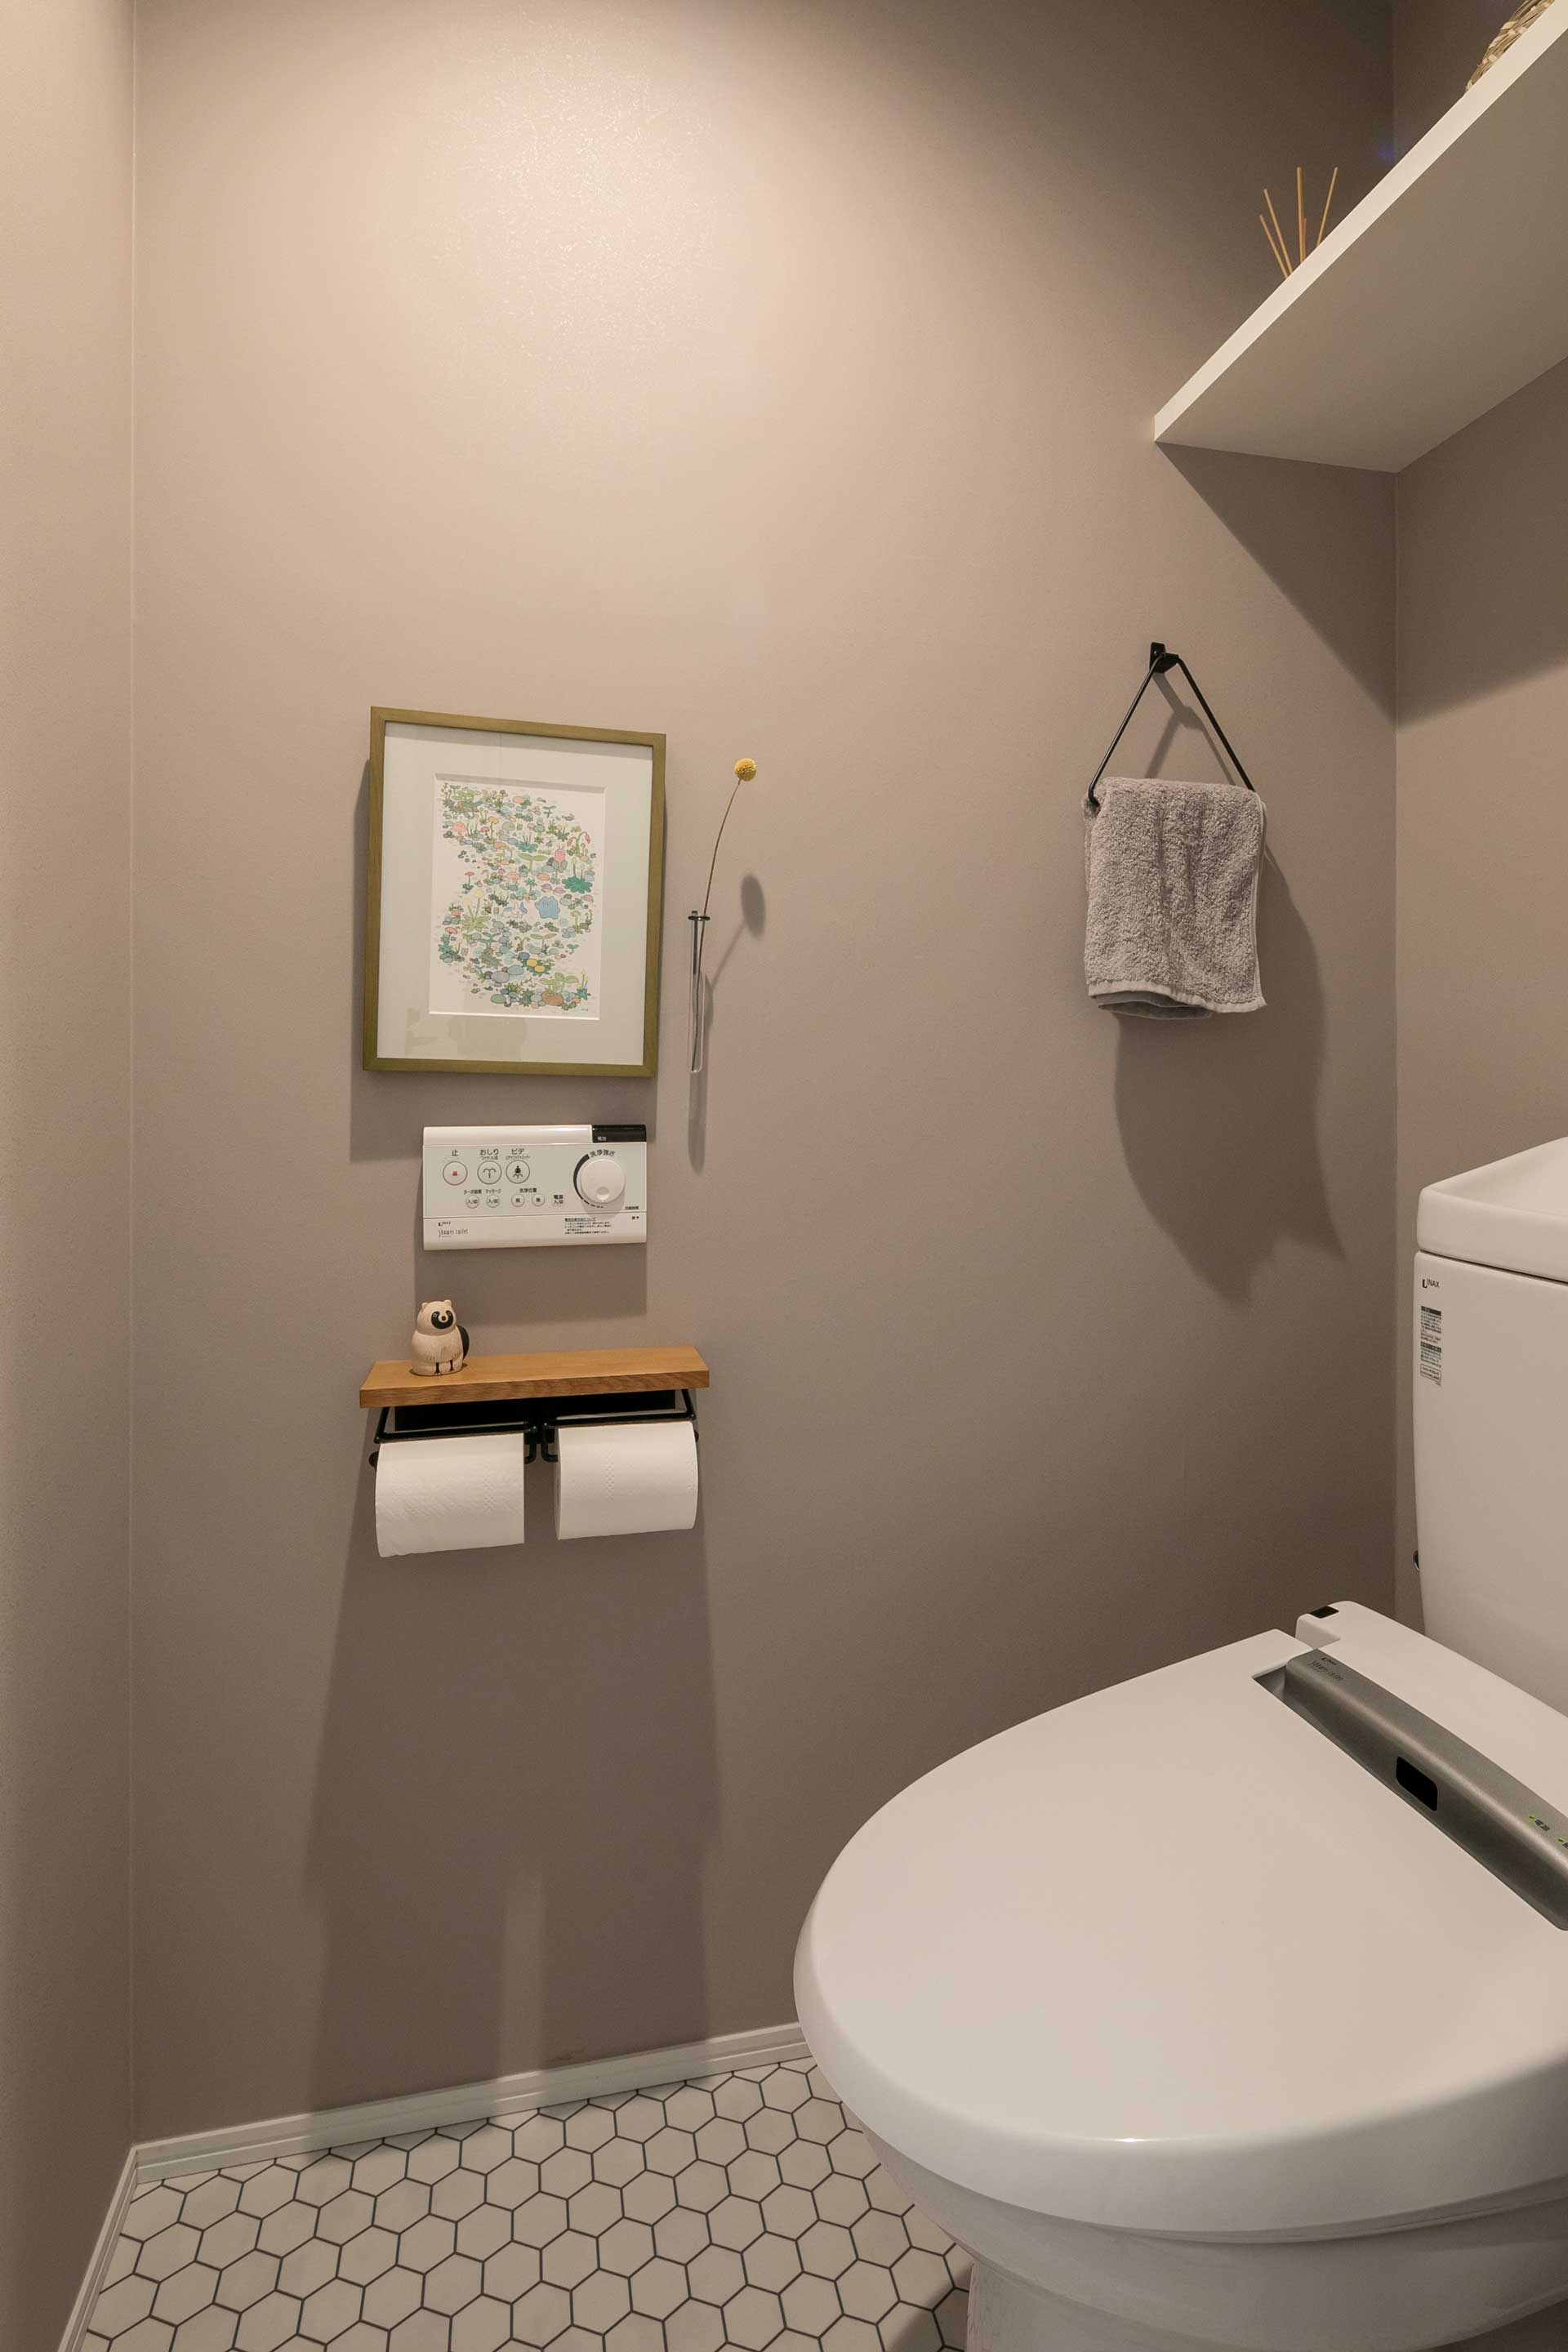 ビビッドな廊下やワークスペースとは対照的に水回りはグレーを基調としたシックな雰囲気に。トイレのタオル掛けにはアイアンを採用。床はタイル柄のクッションフロアにし、モダンな印象のある空間となった。